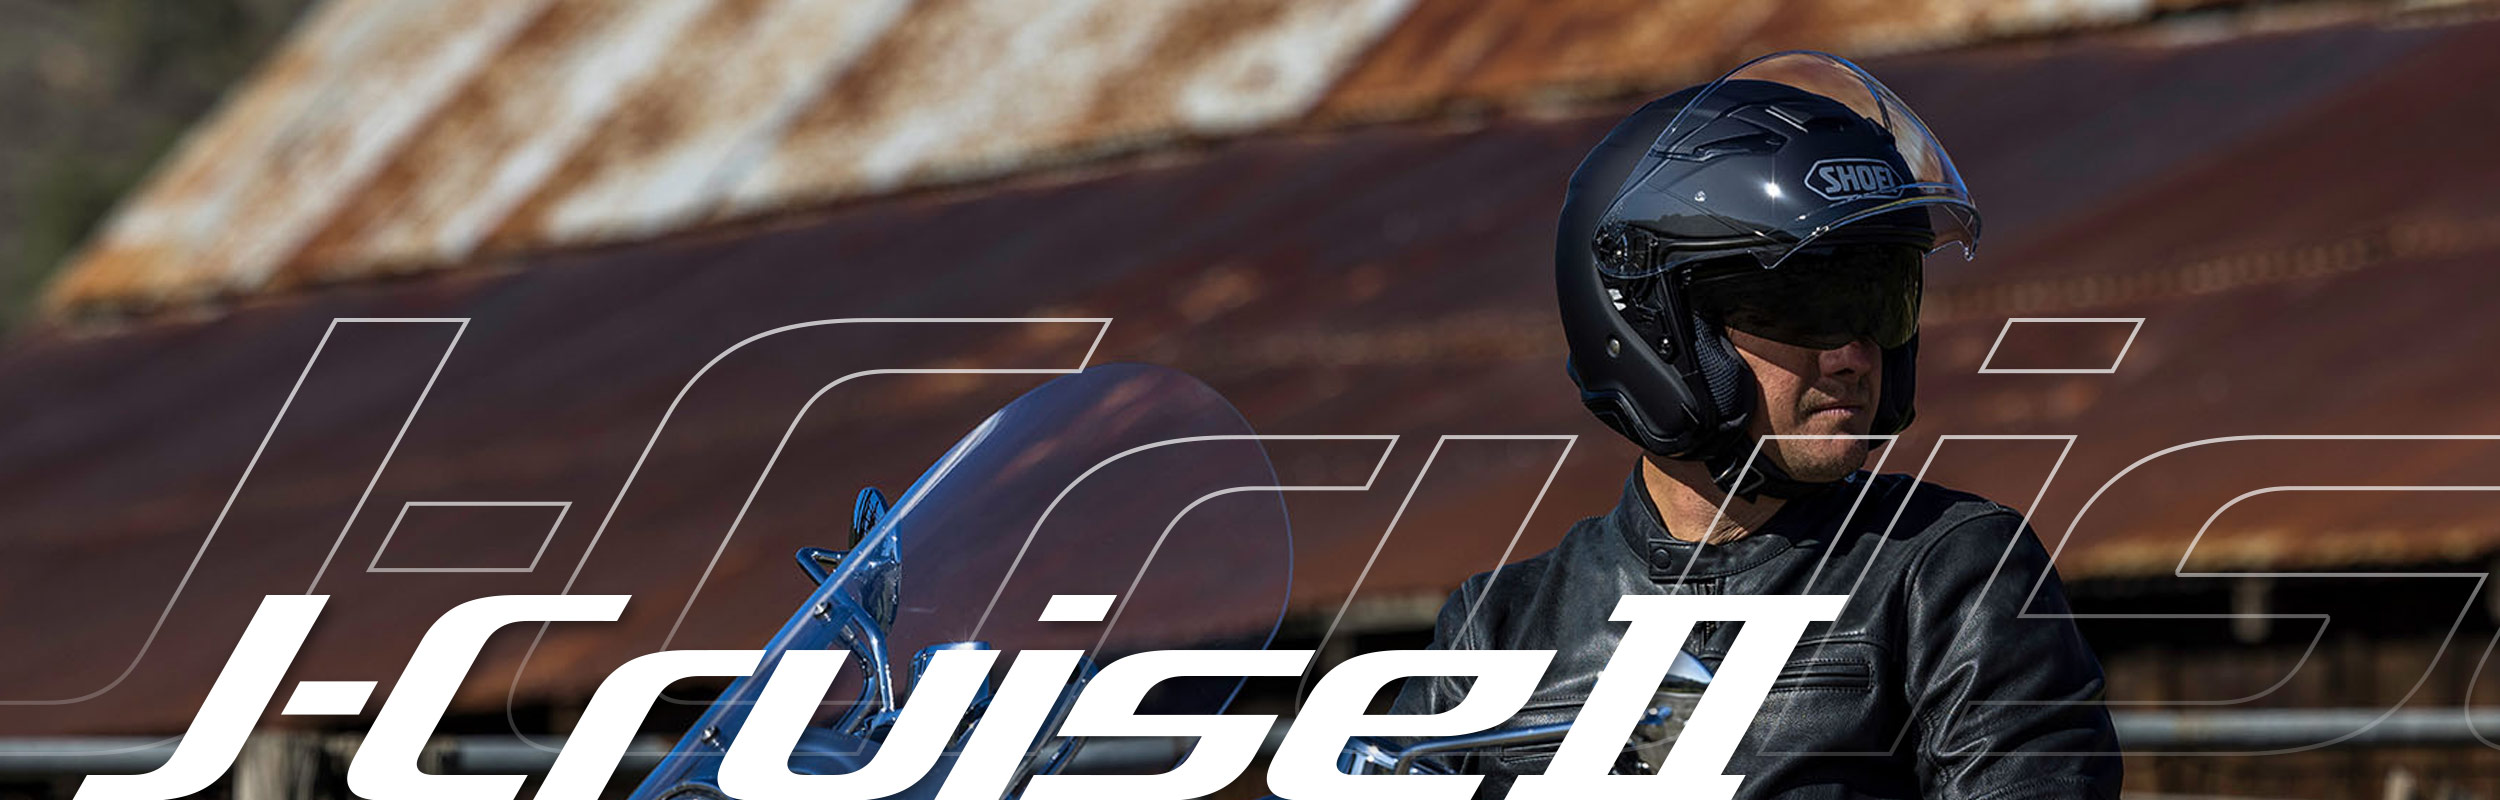 J-Cruise II – Shoei Helmets North America